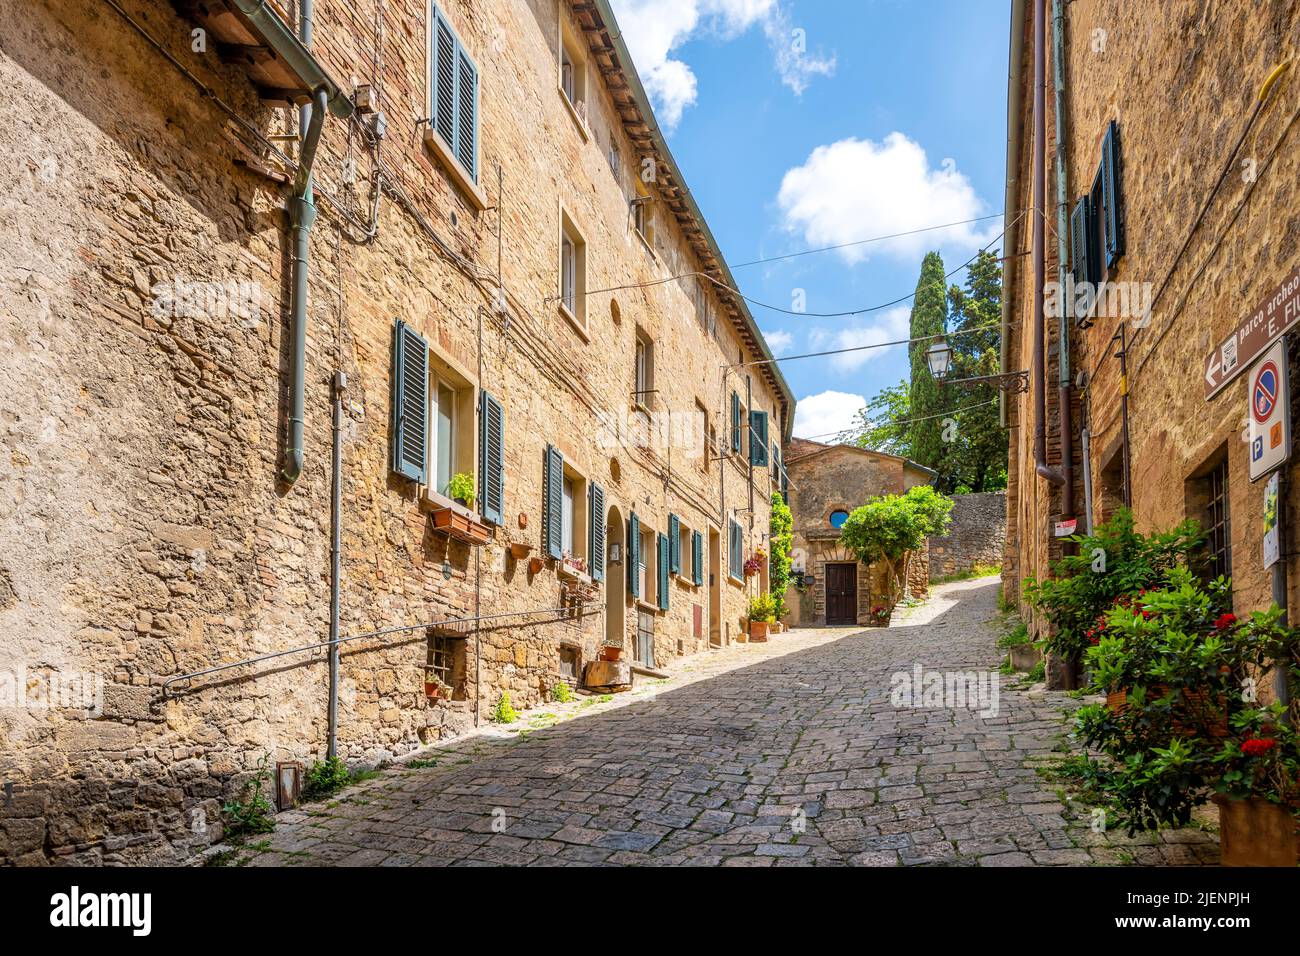 Une ruelle en pierre étroite dans la ville colline de Volterra, Italie. Banque D'Images